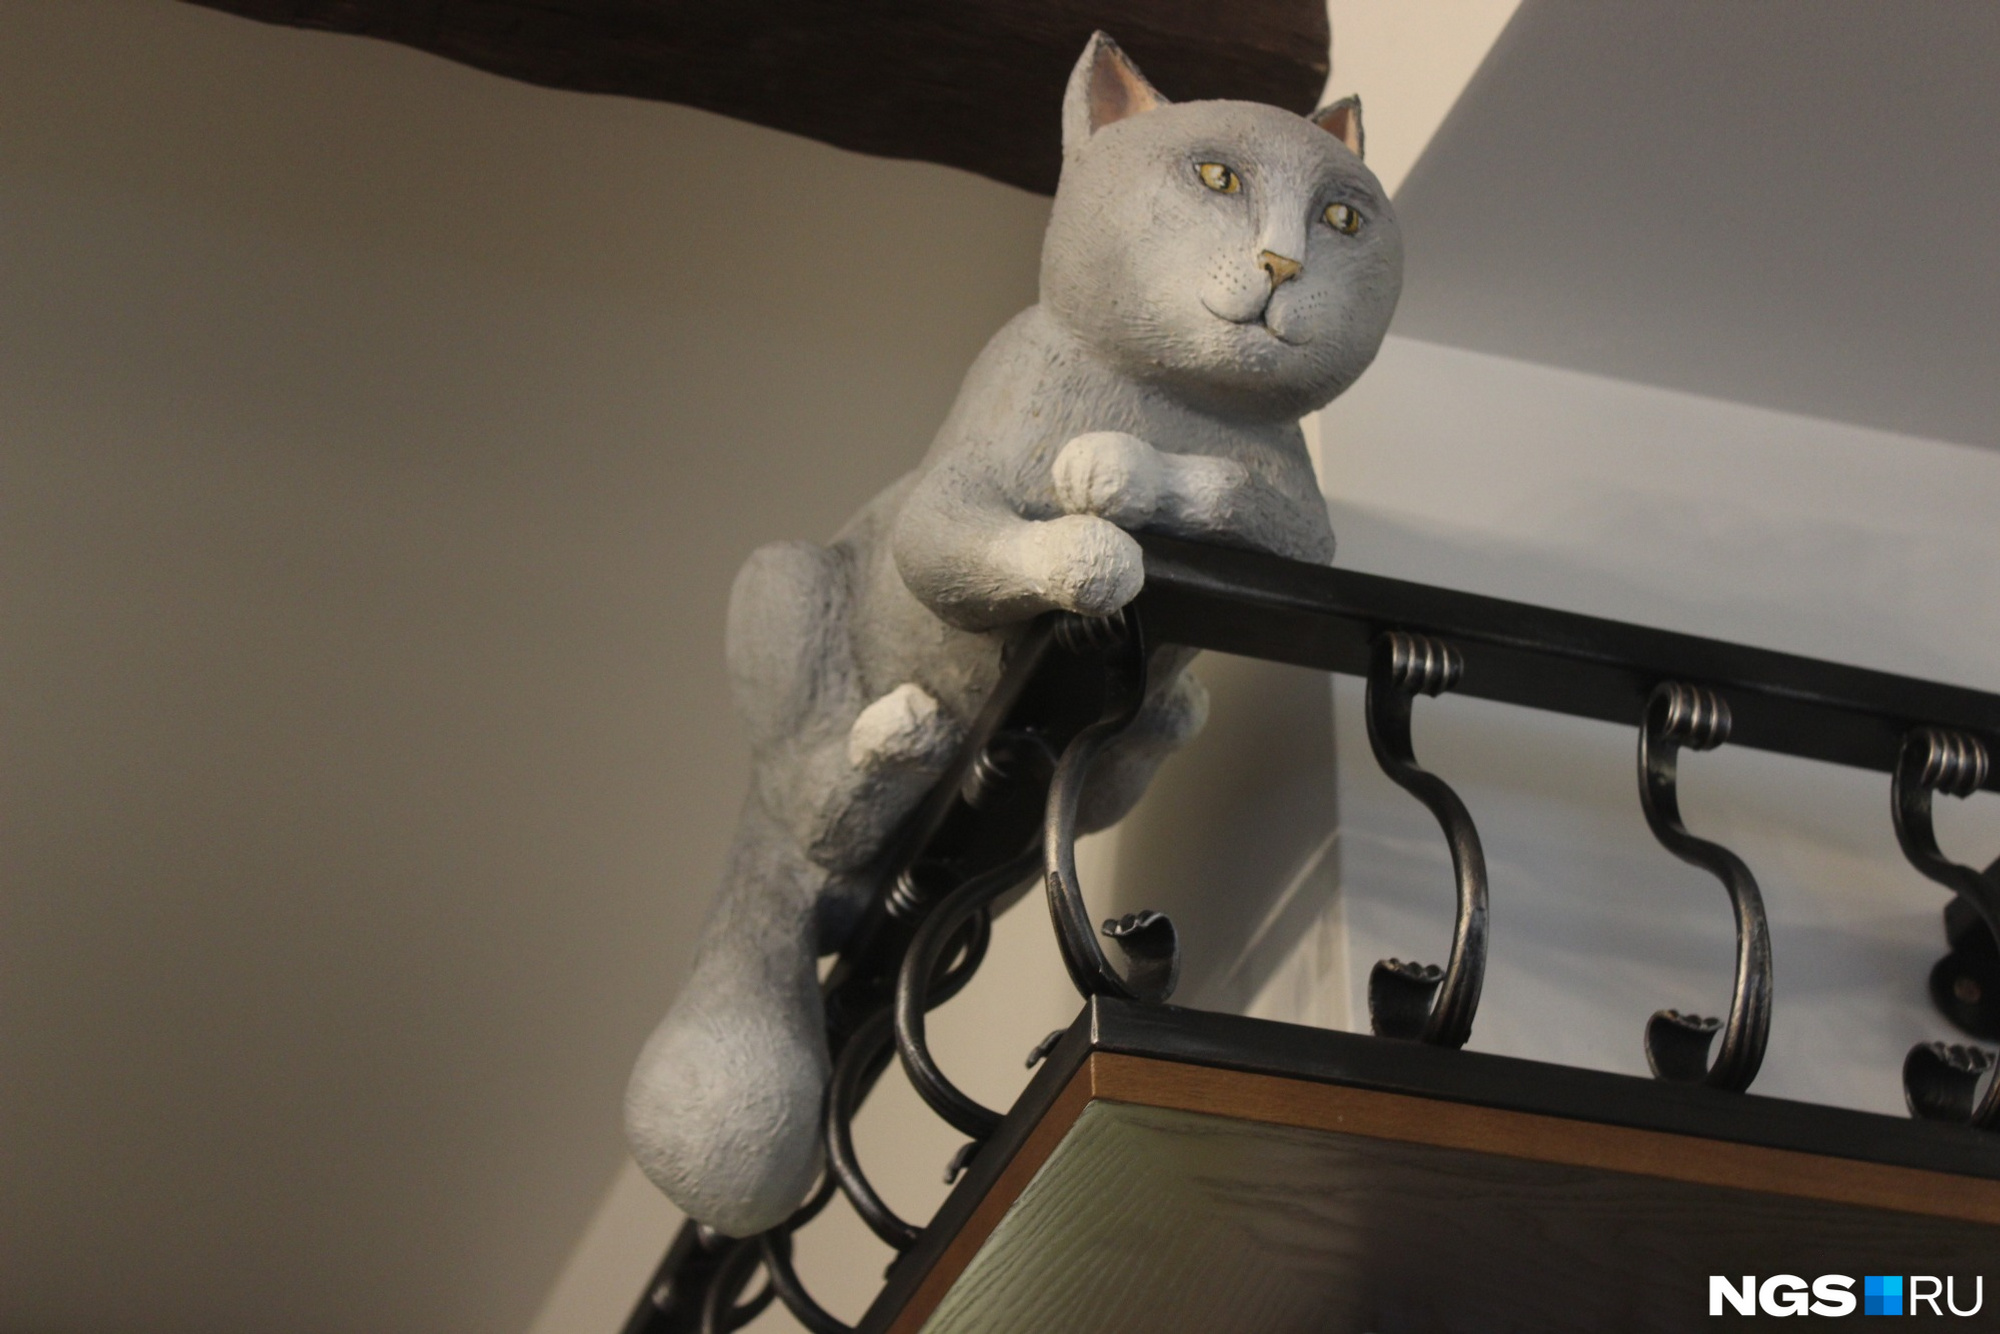 Игрушечный кот смотрит на входящих скептически. Фото Стаса Соколова